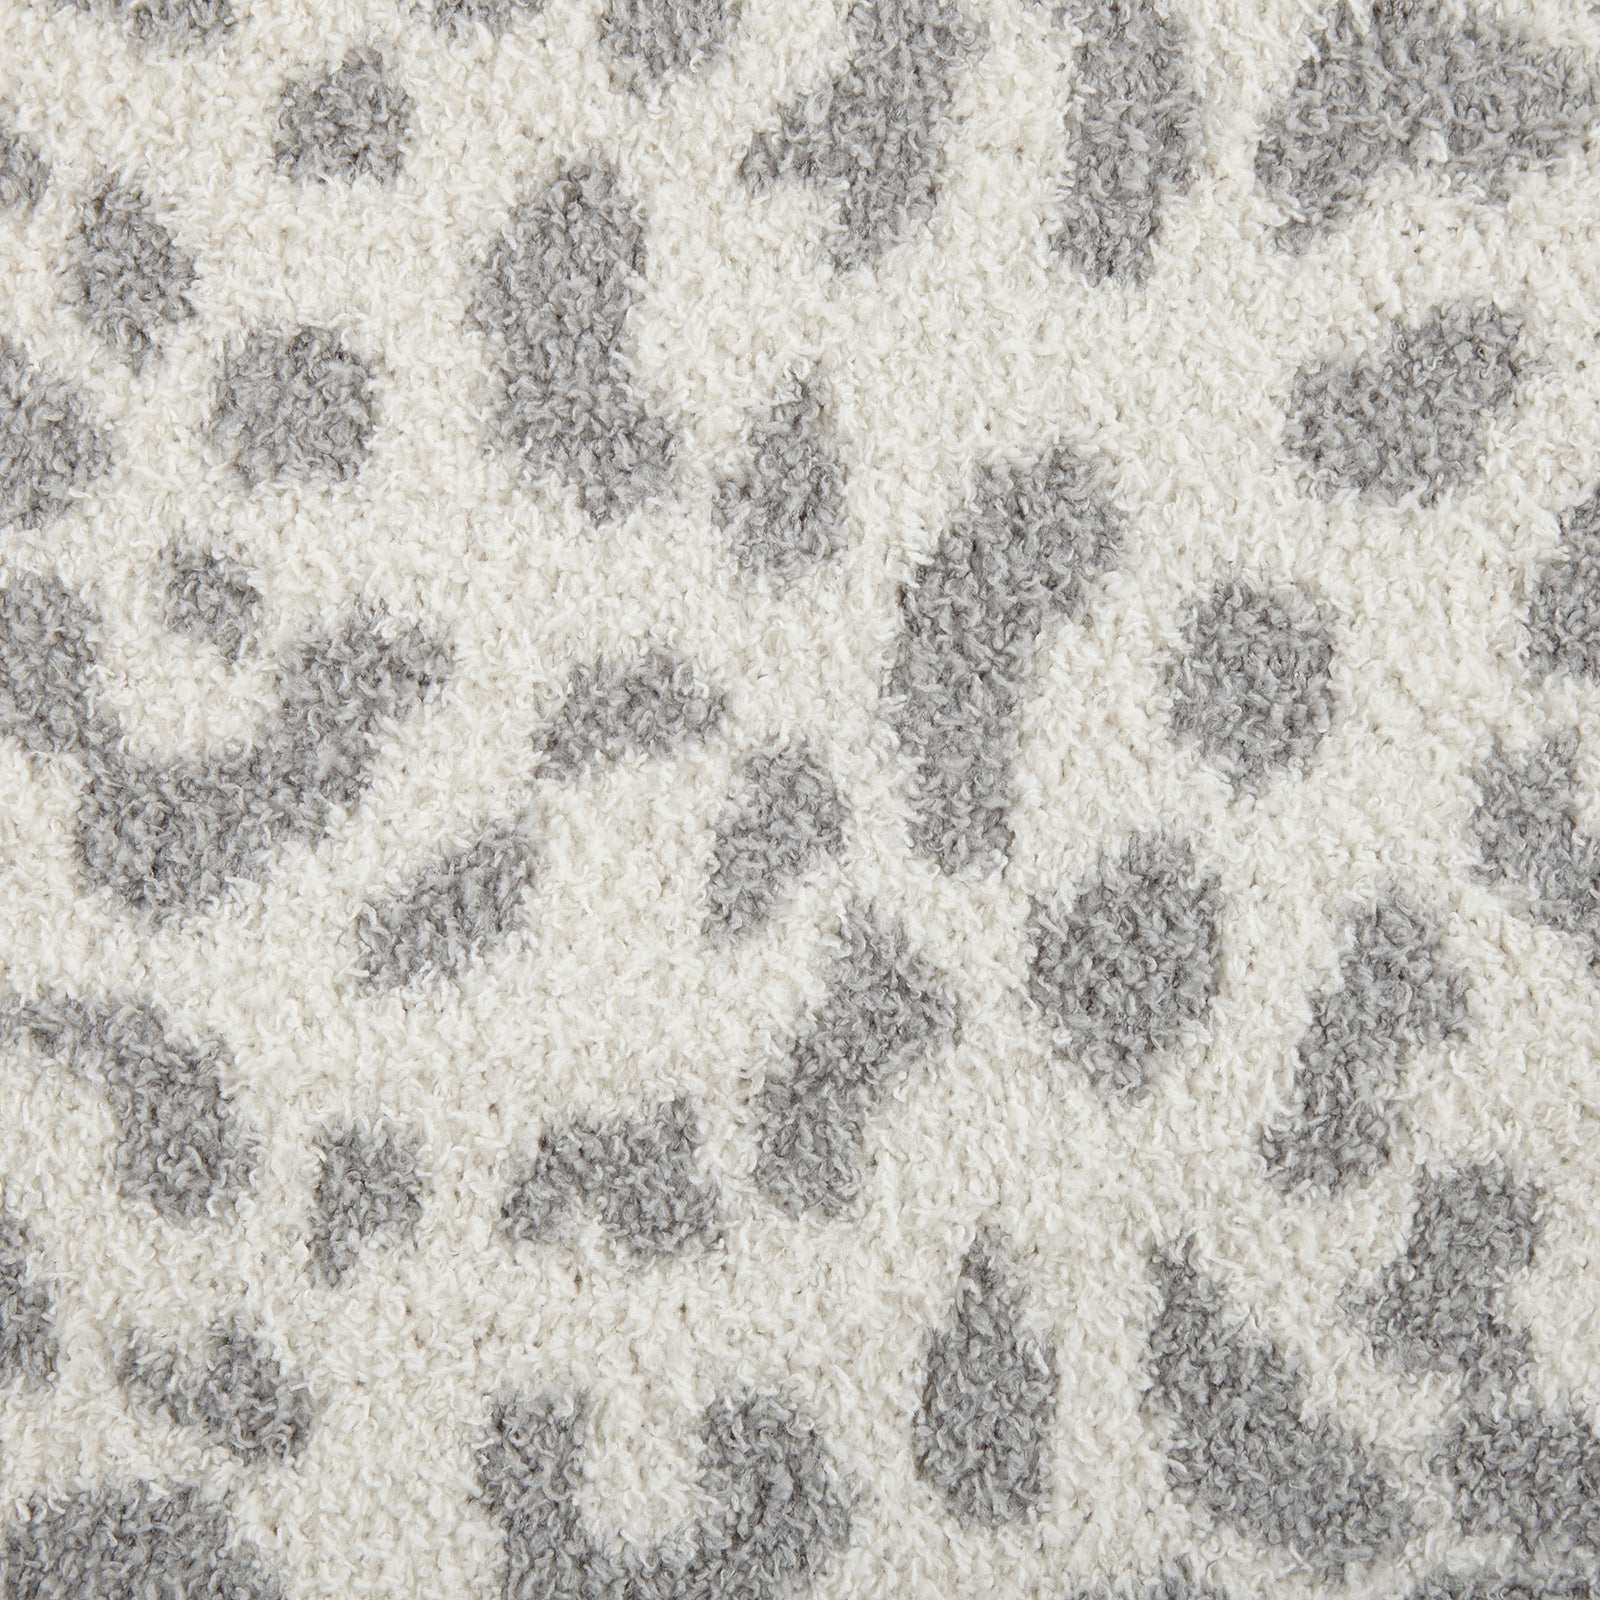 Snow Leopard Print Cozy Knit Throw